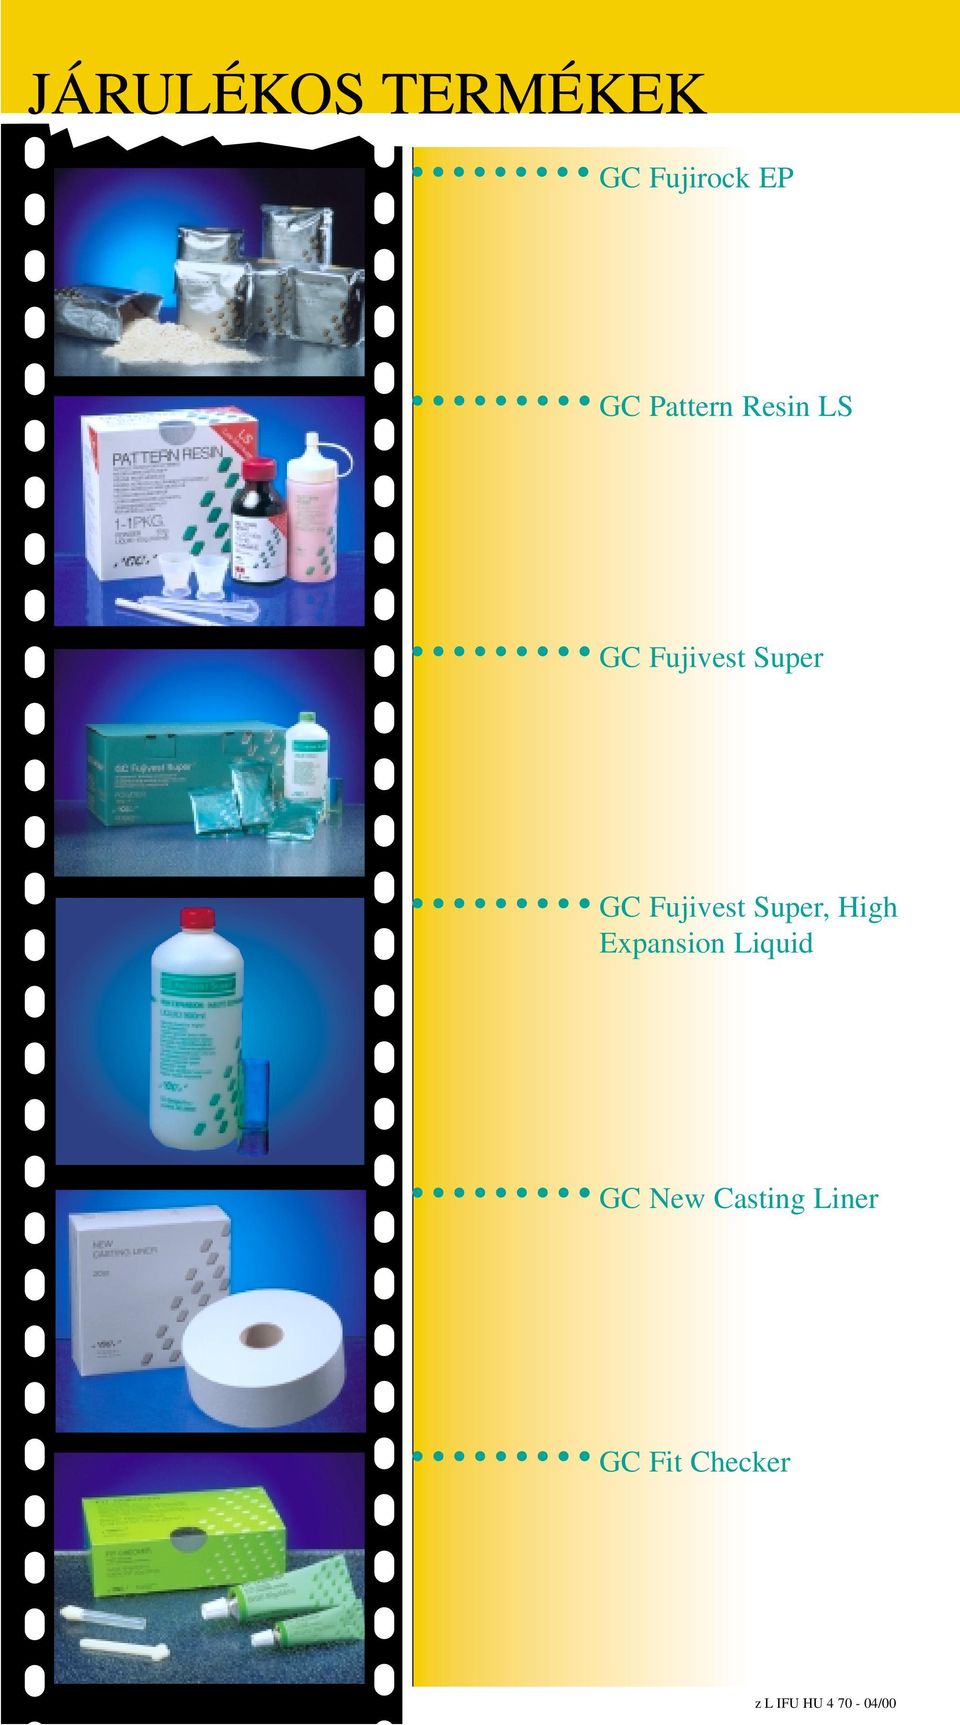 Fujivest Super, High Expansion Liquid GC